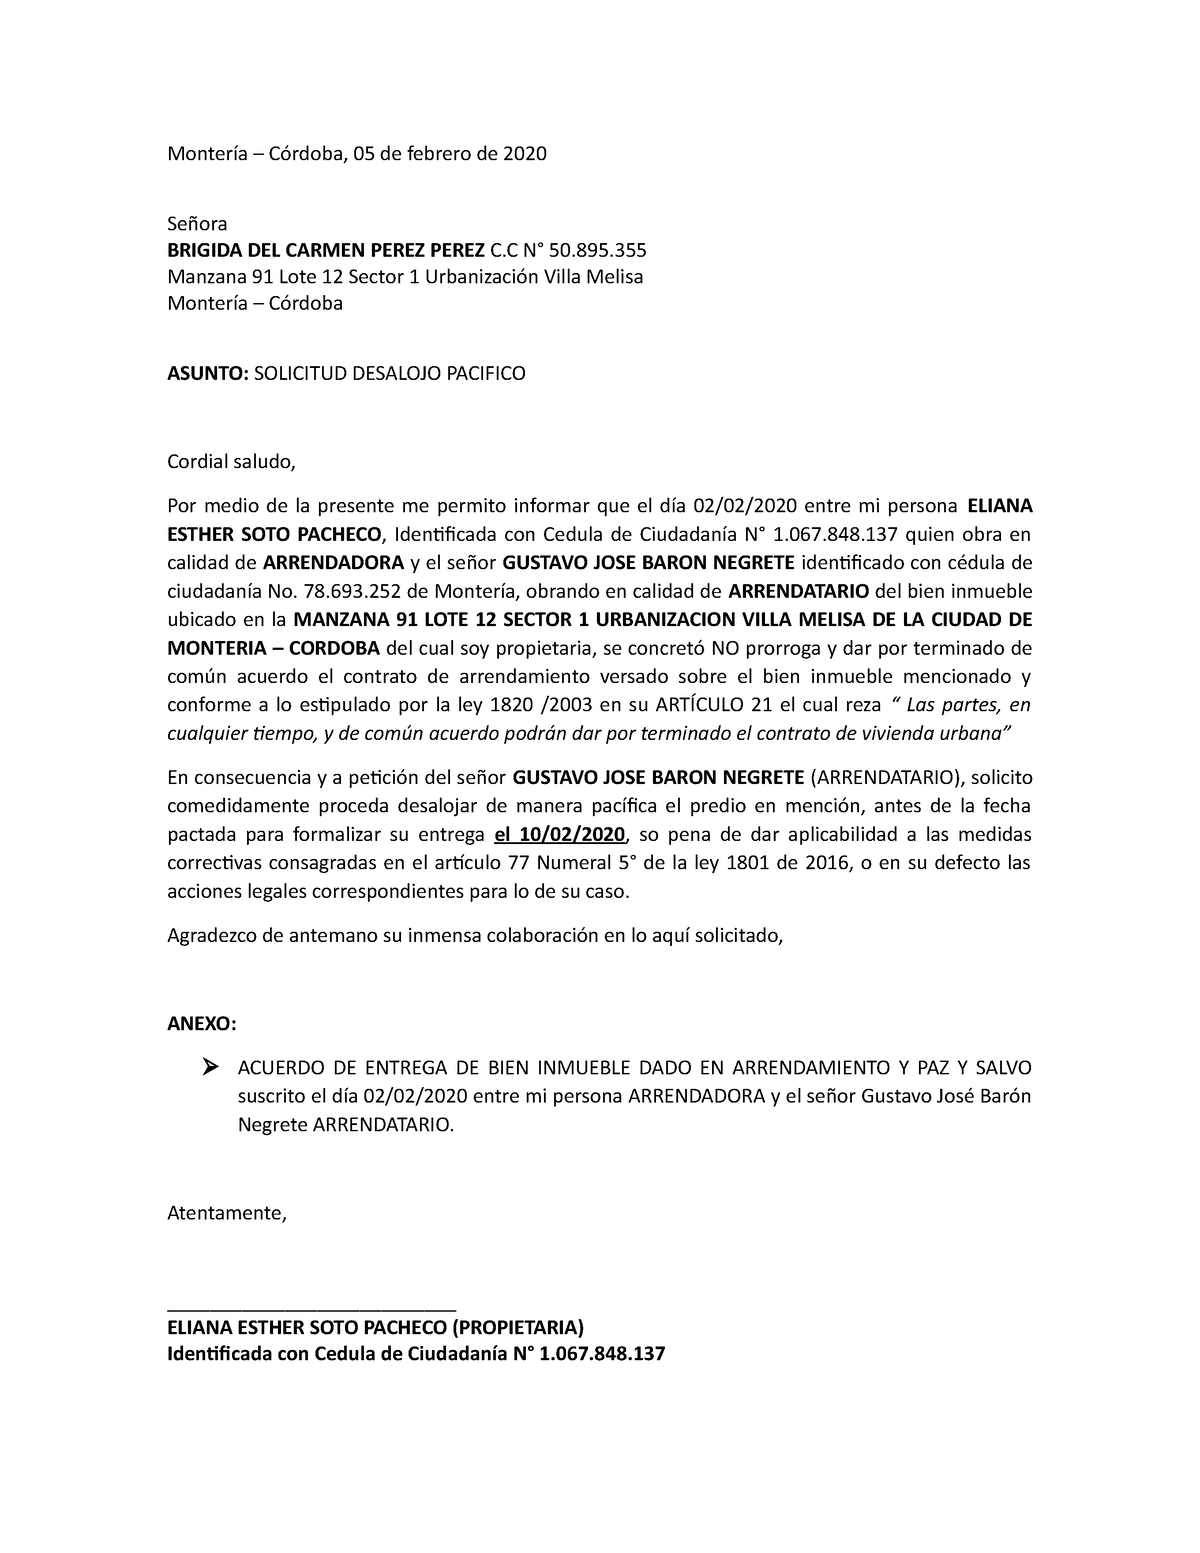 Carta Solicitud Desalojo Montería Córdoba 05 De Febrero De 2020